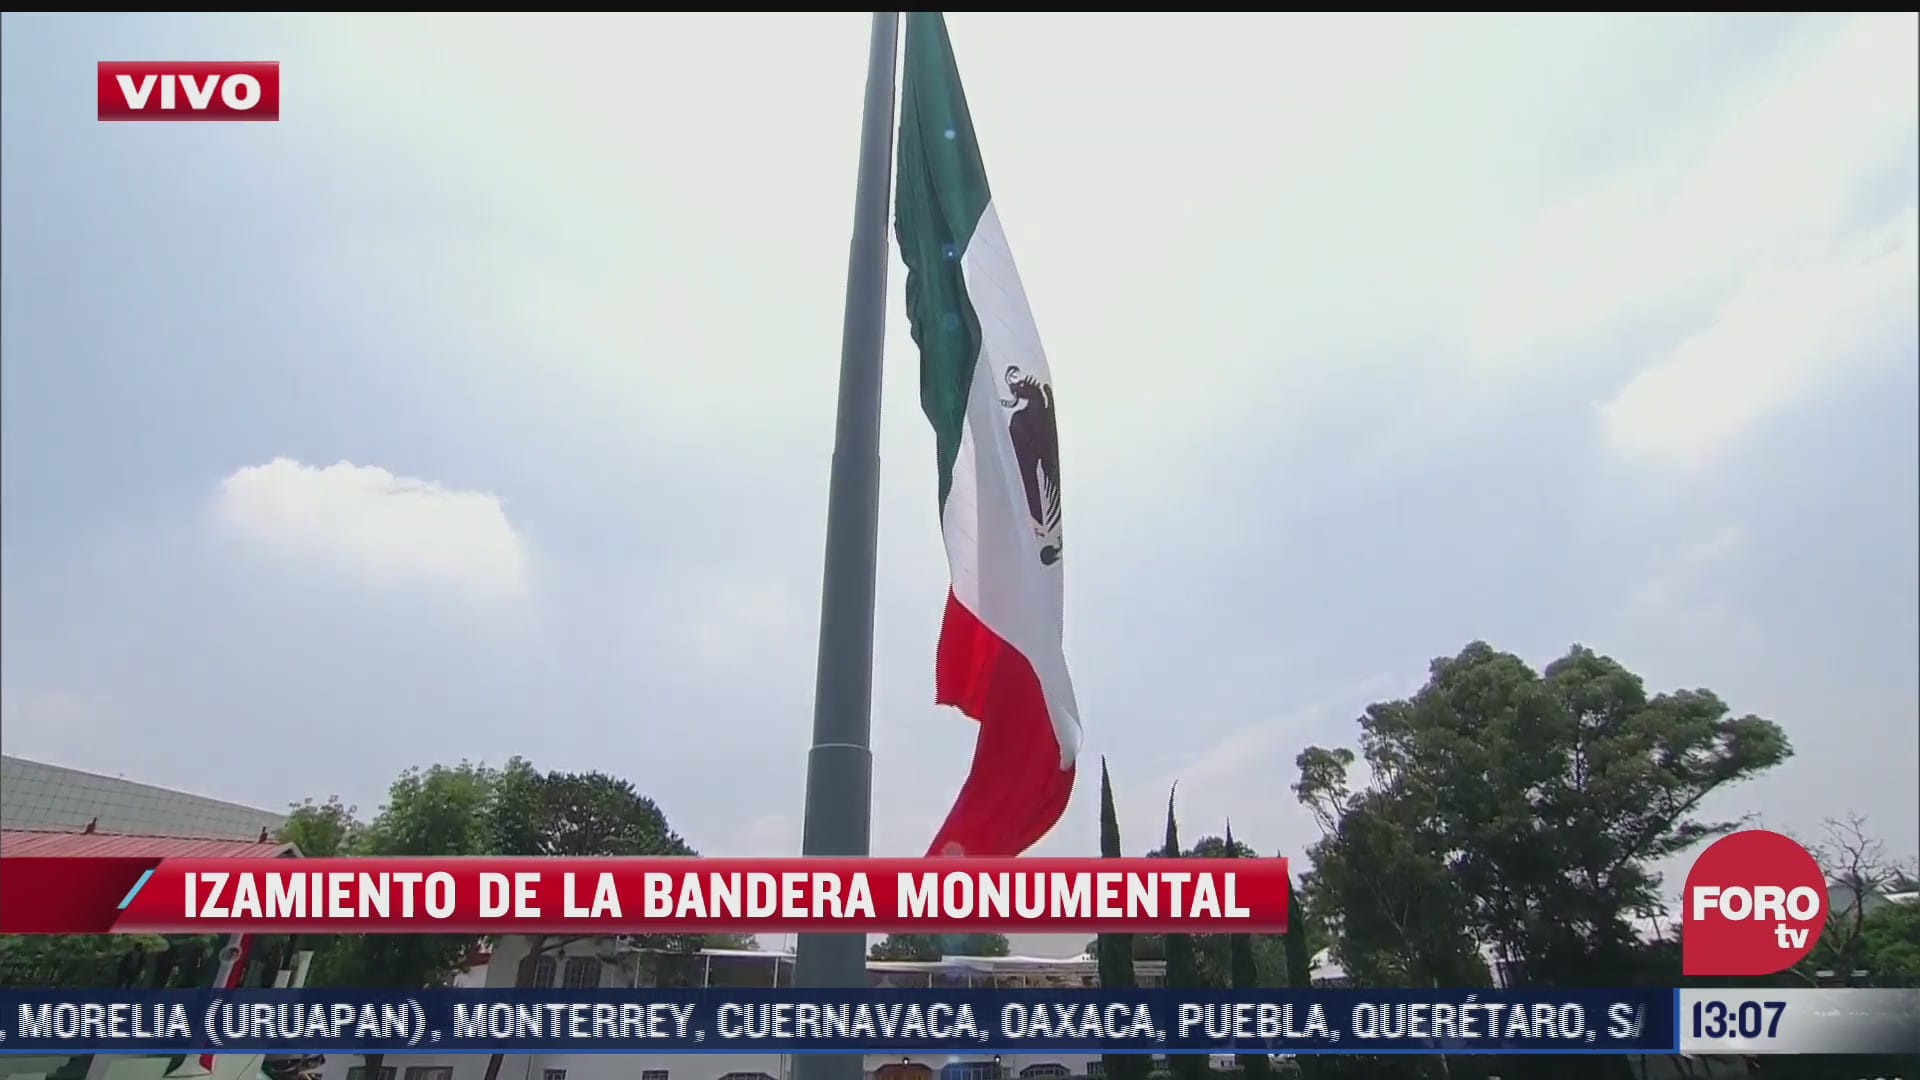 amlo iza la bandera monumental de mexico en el campo marte durante la ceremonia que avala la creacion de la comandancia del ejercito mexicano